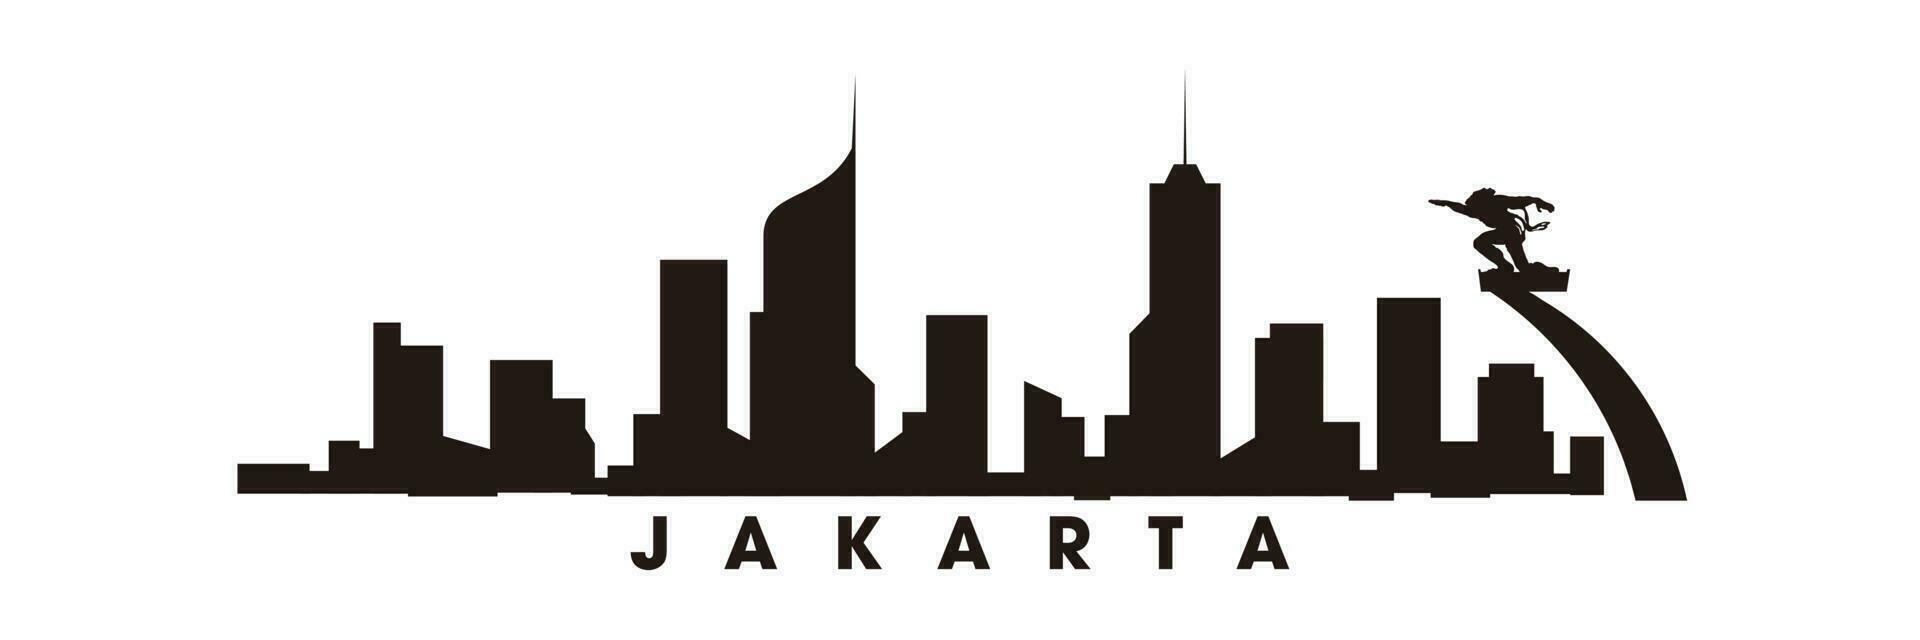 Jakarta Skyline und Wahrzeichen Silhouettenvektor vektor